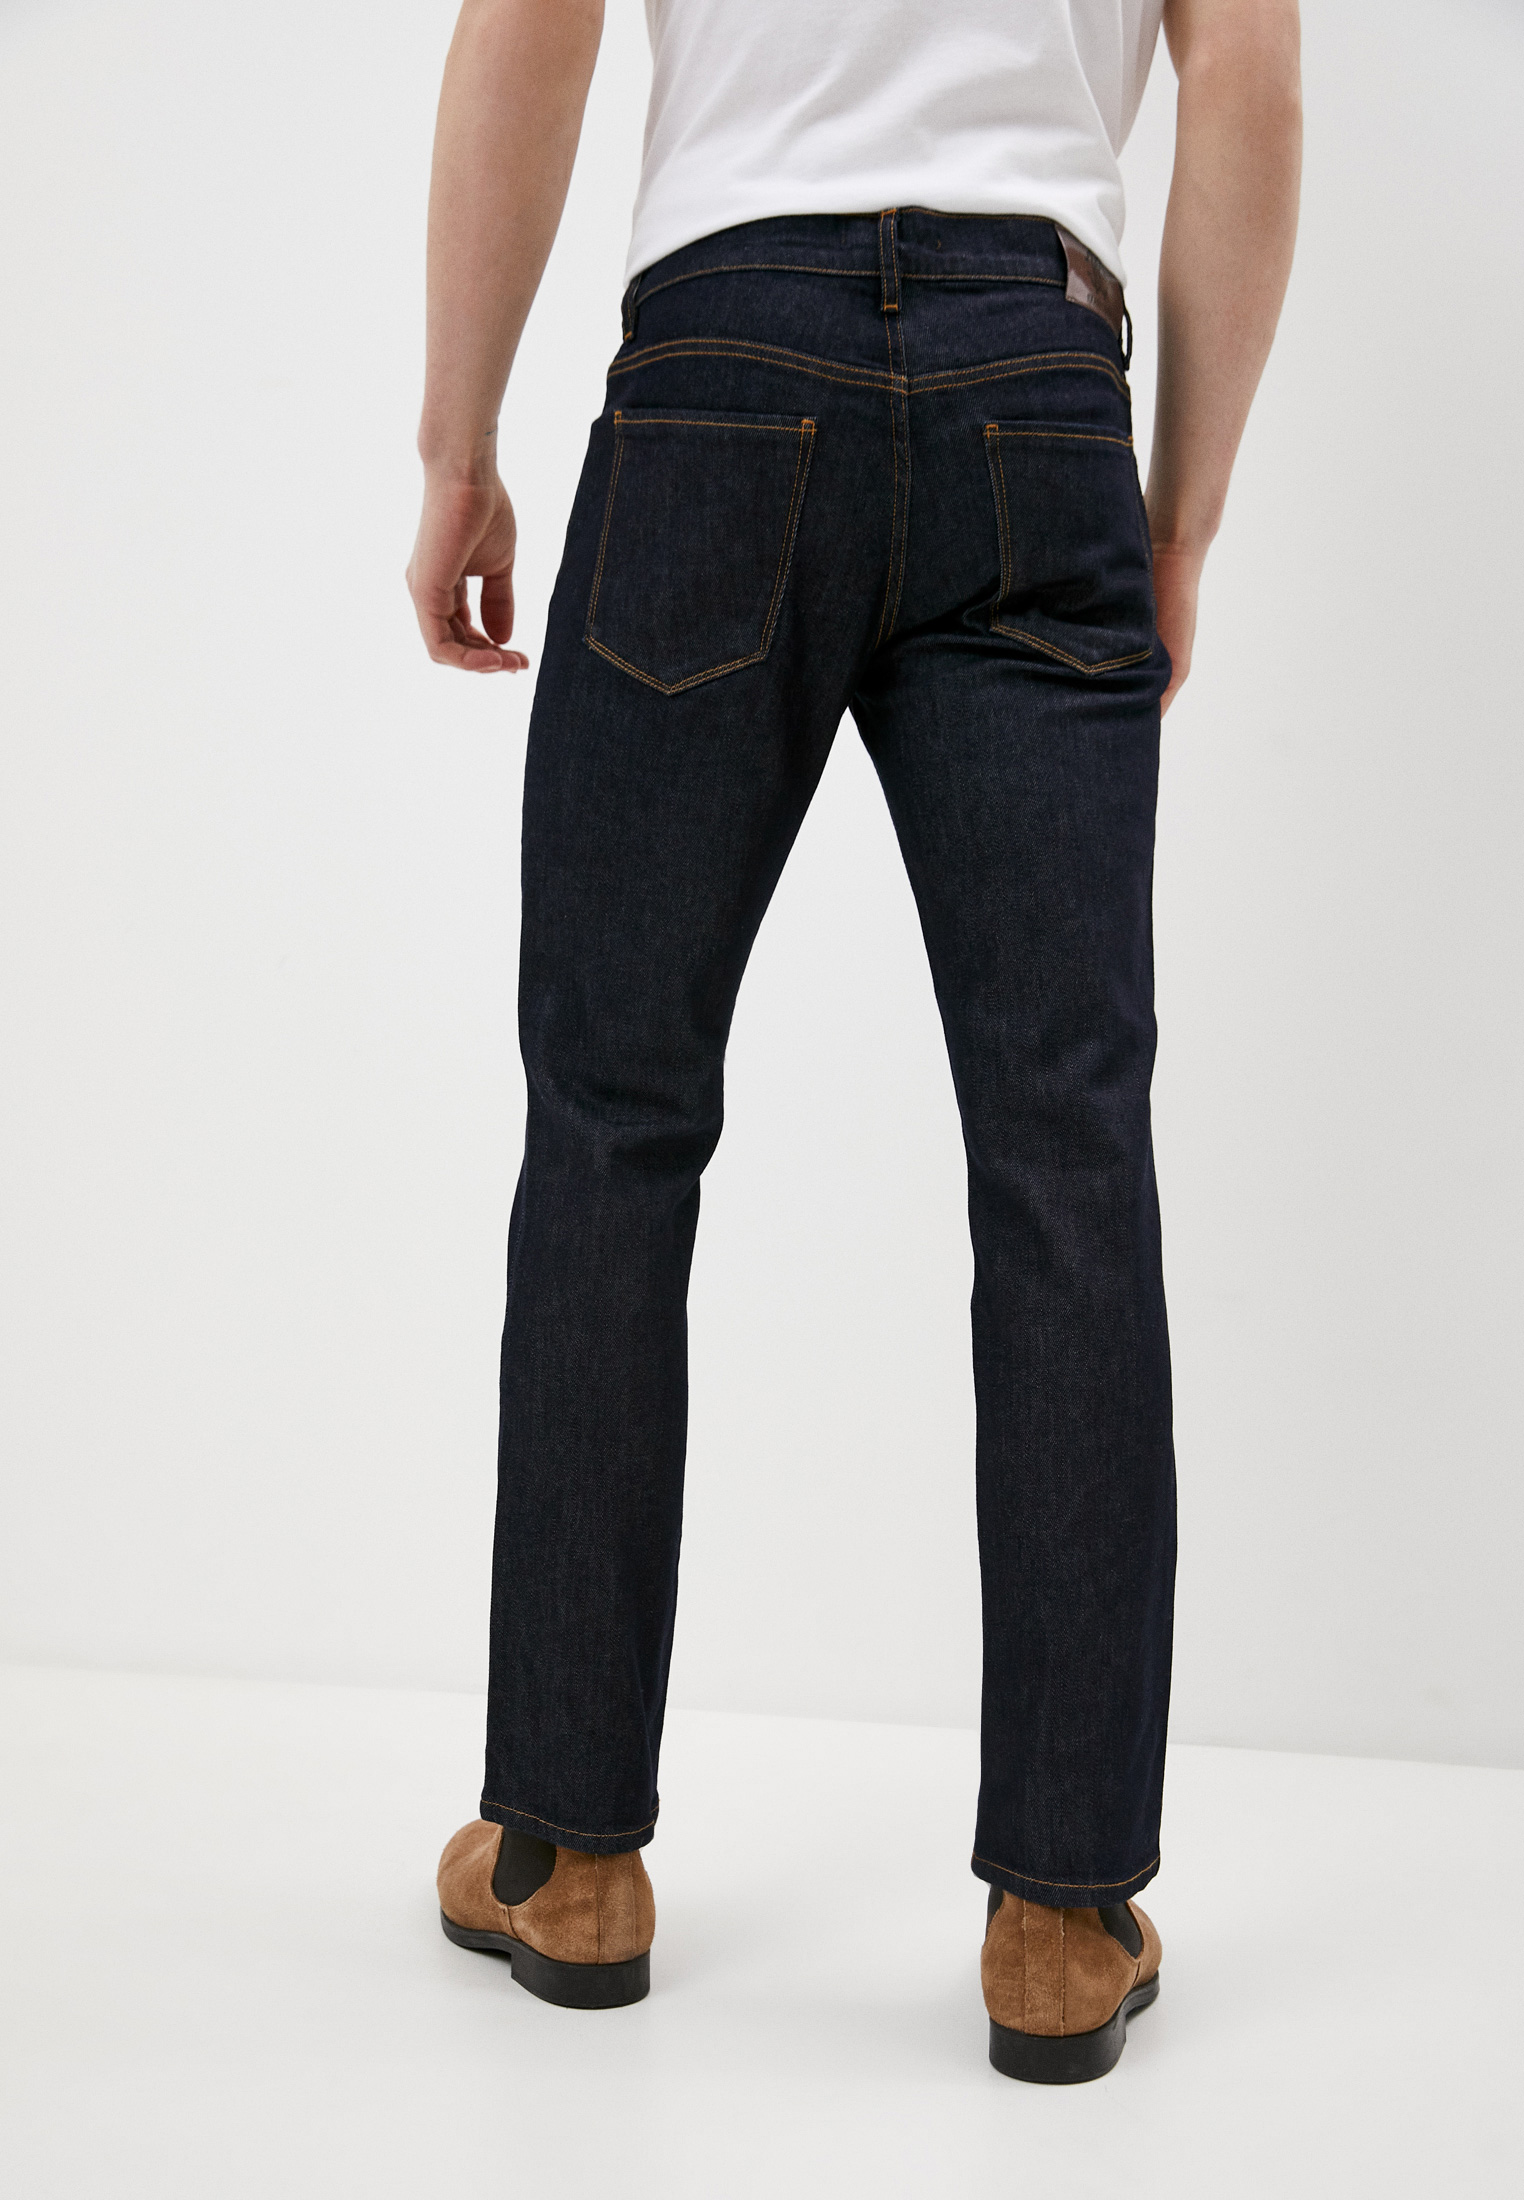 Мужские прямые джинсы Roberto Cavalli (Роберто Кавалли) GSJ201A3800: изображение 4